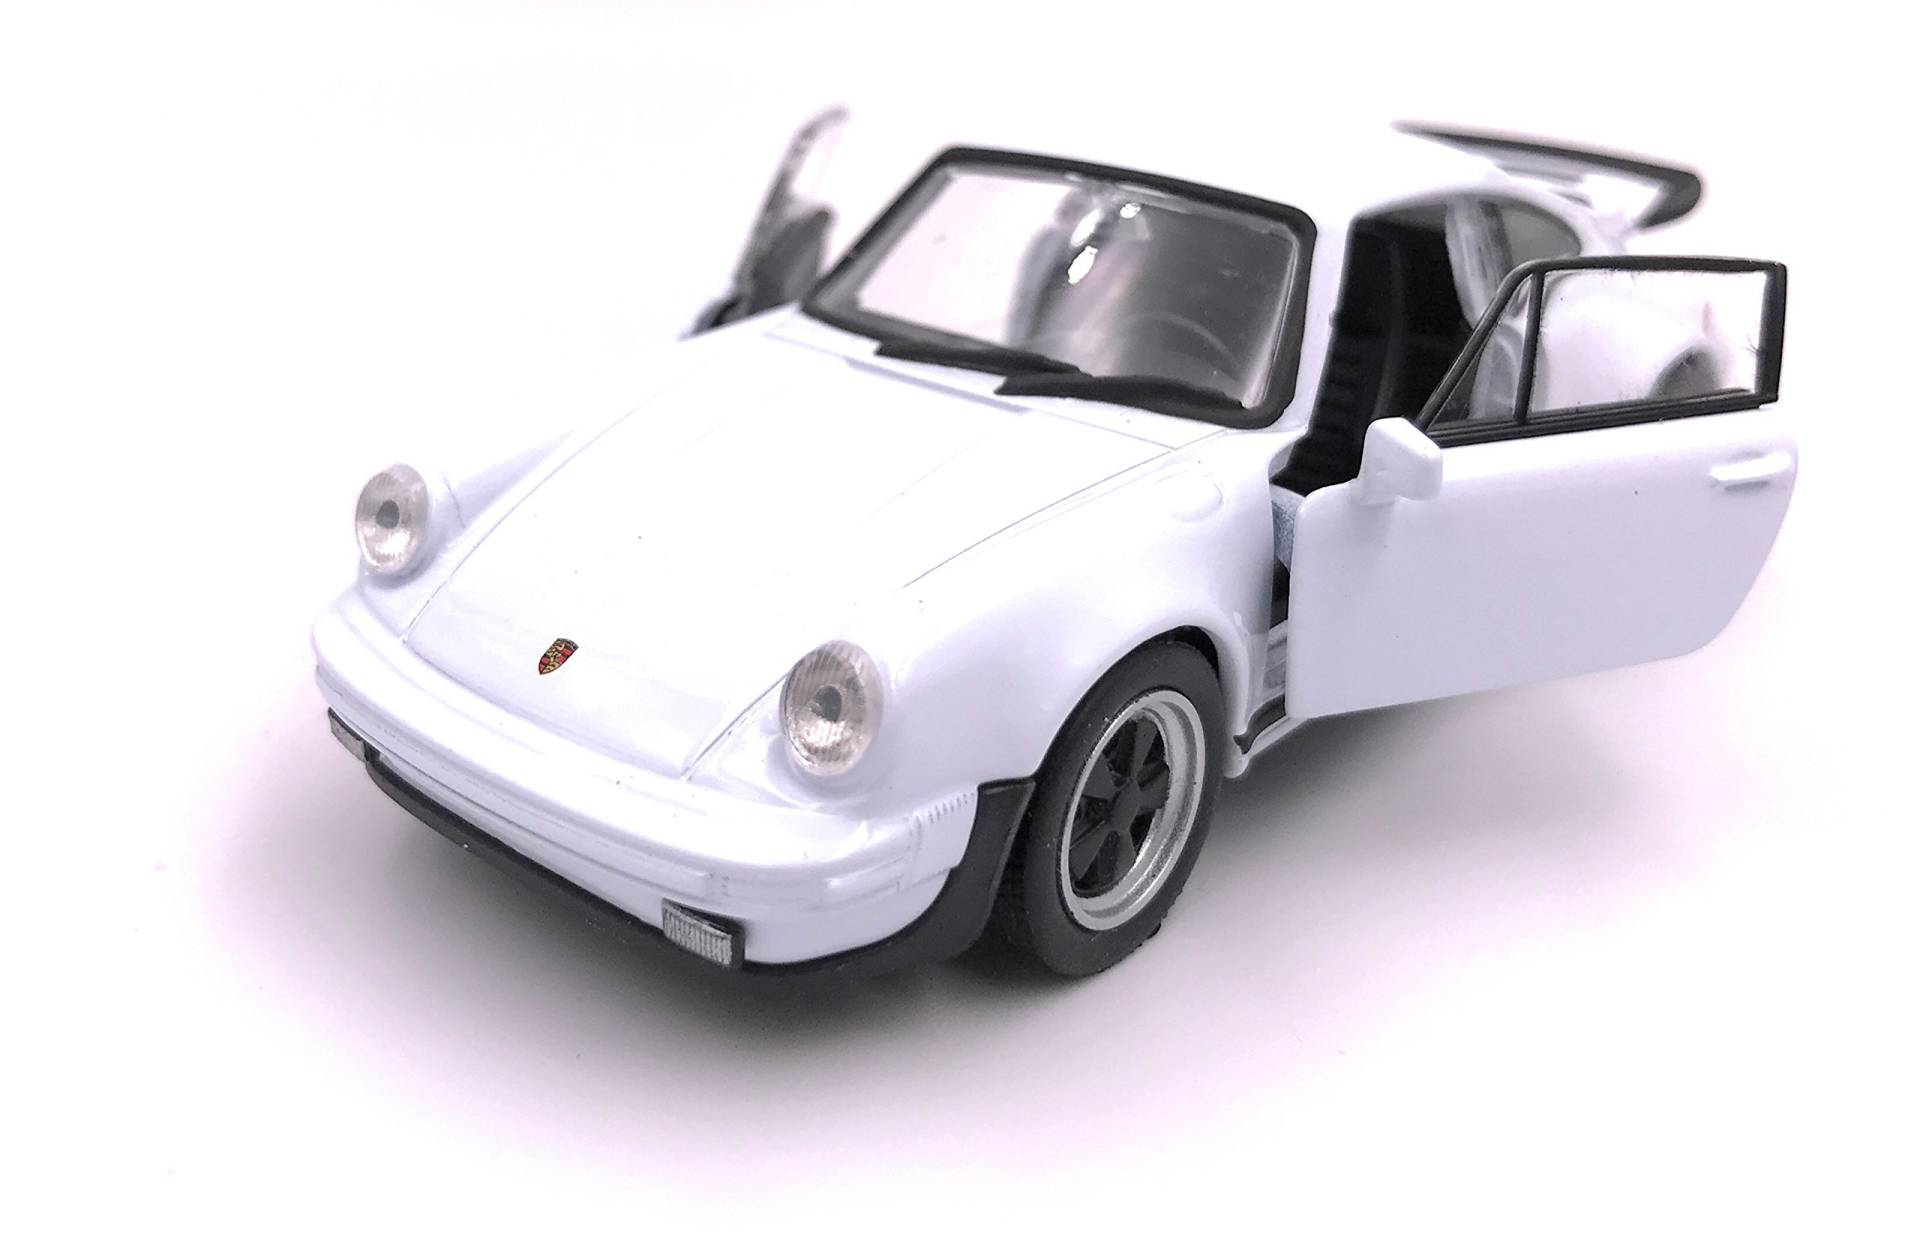 H-Customs Porsche 911 Turbo 930 1975 Modellauto Auto Lizenzprodukt 1:34-1:39 weiß von H-Customs